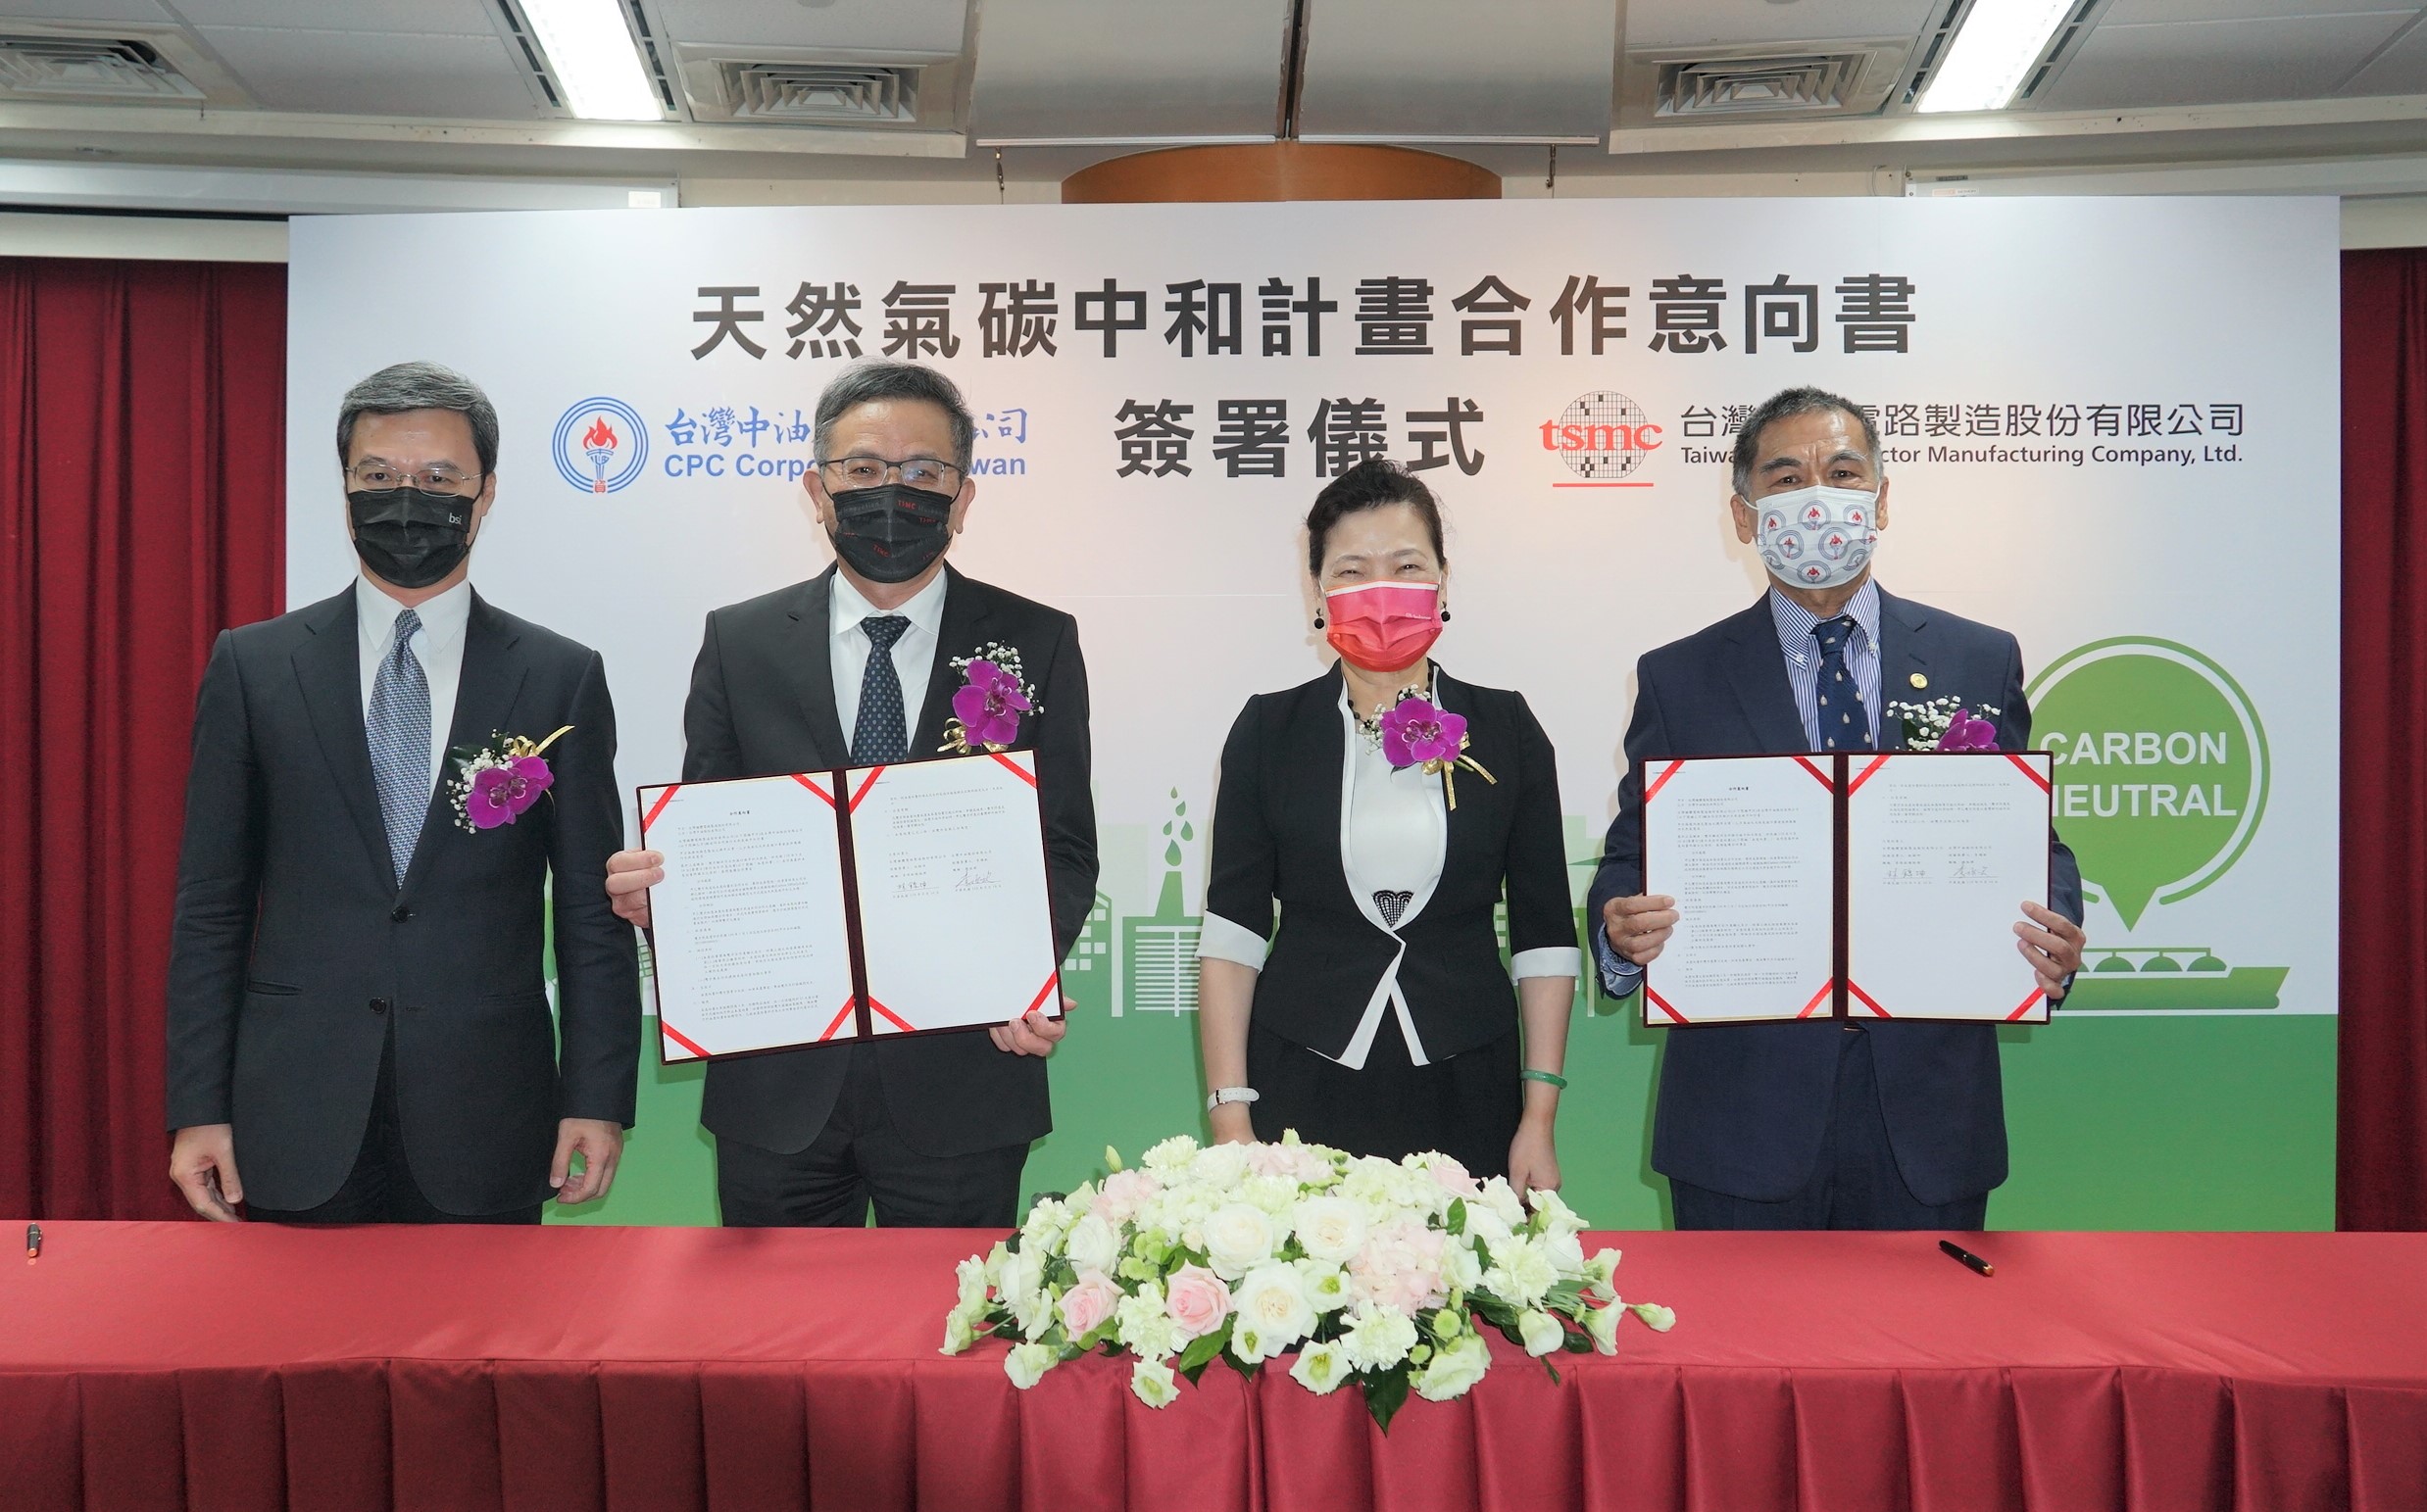 台灣中油、台積電簽署「天然氣碳中和計畫合作意向書 (MOU)」共同宣示支持環保理念